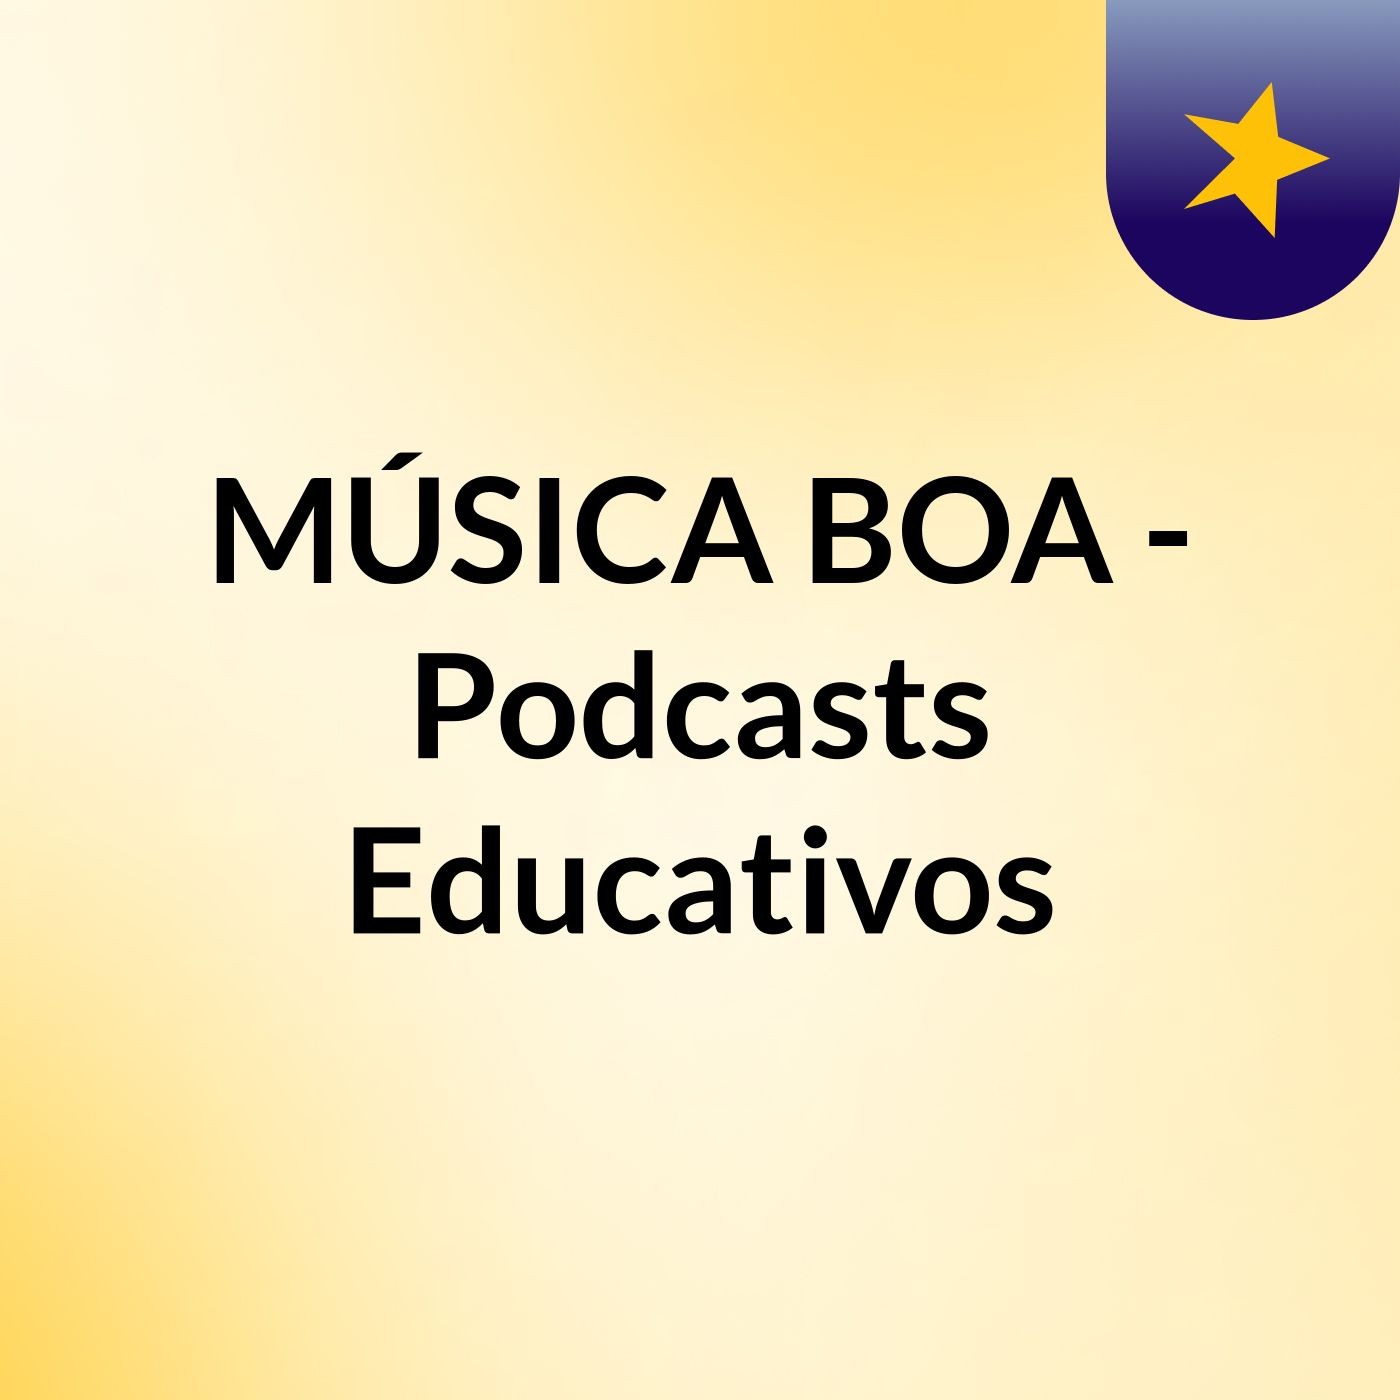 MÚSICA BOA -  Podcasts Educativos